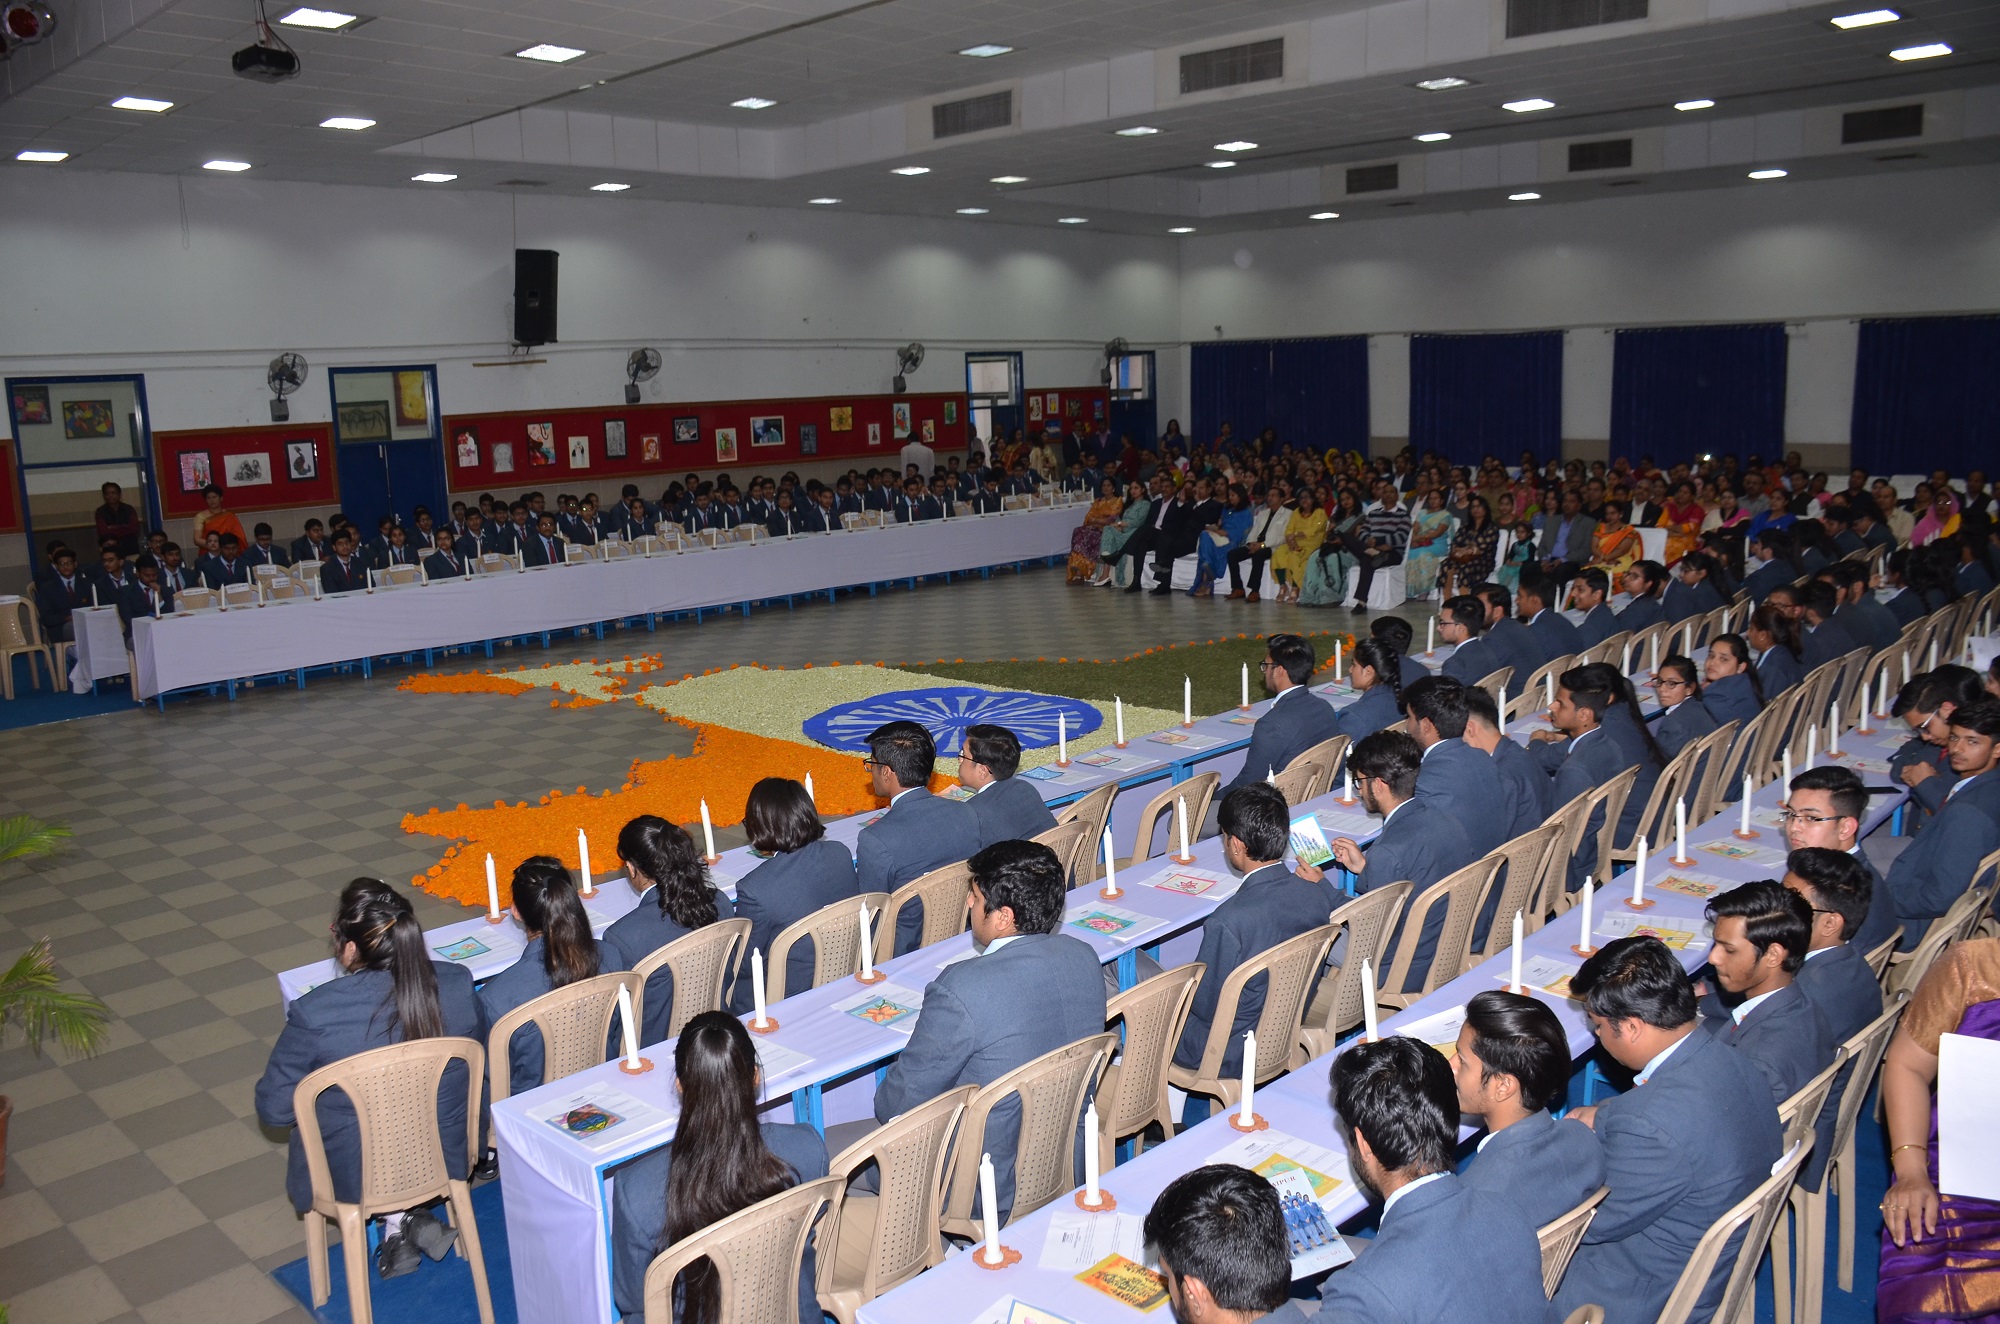 Graduation ceremony 2018 held at Sanskar School